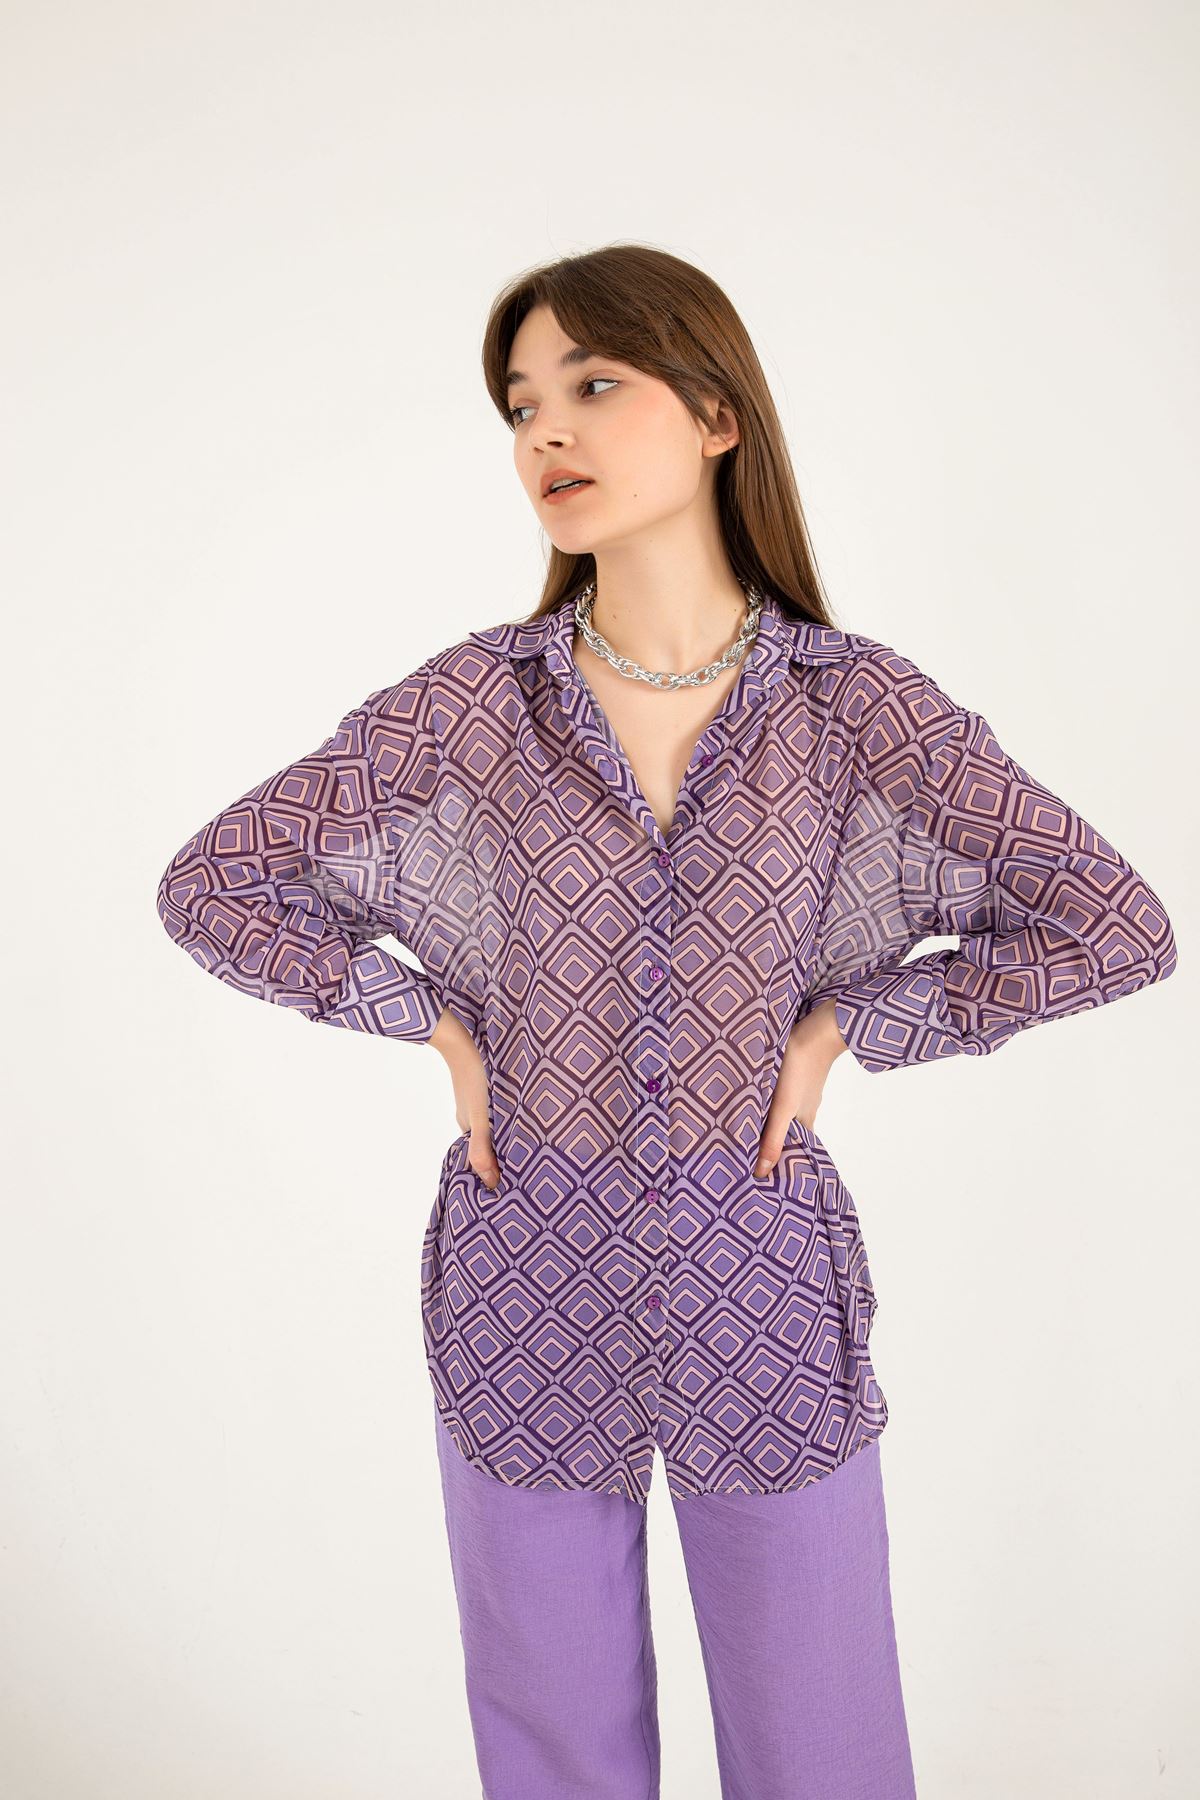 Chiffon Fabric Full Fit Geometric Pattern Women Shirt - Lilac